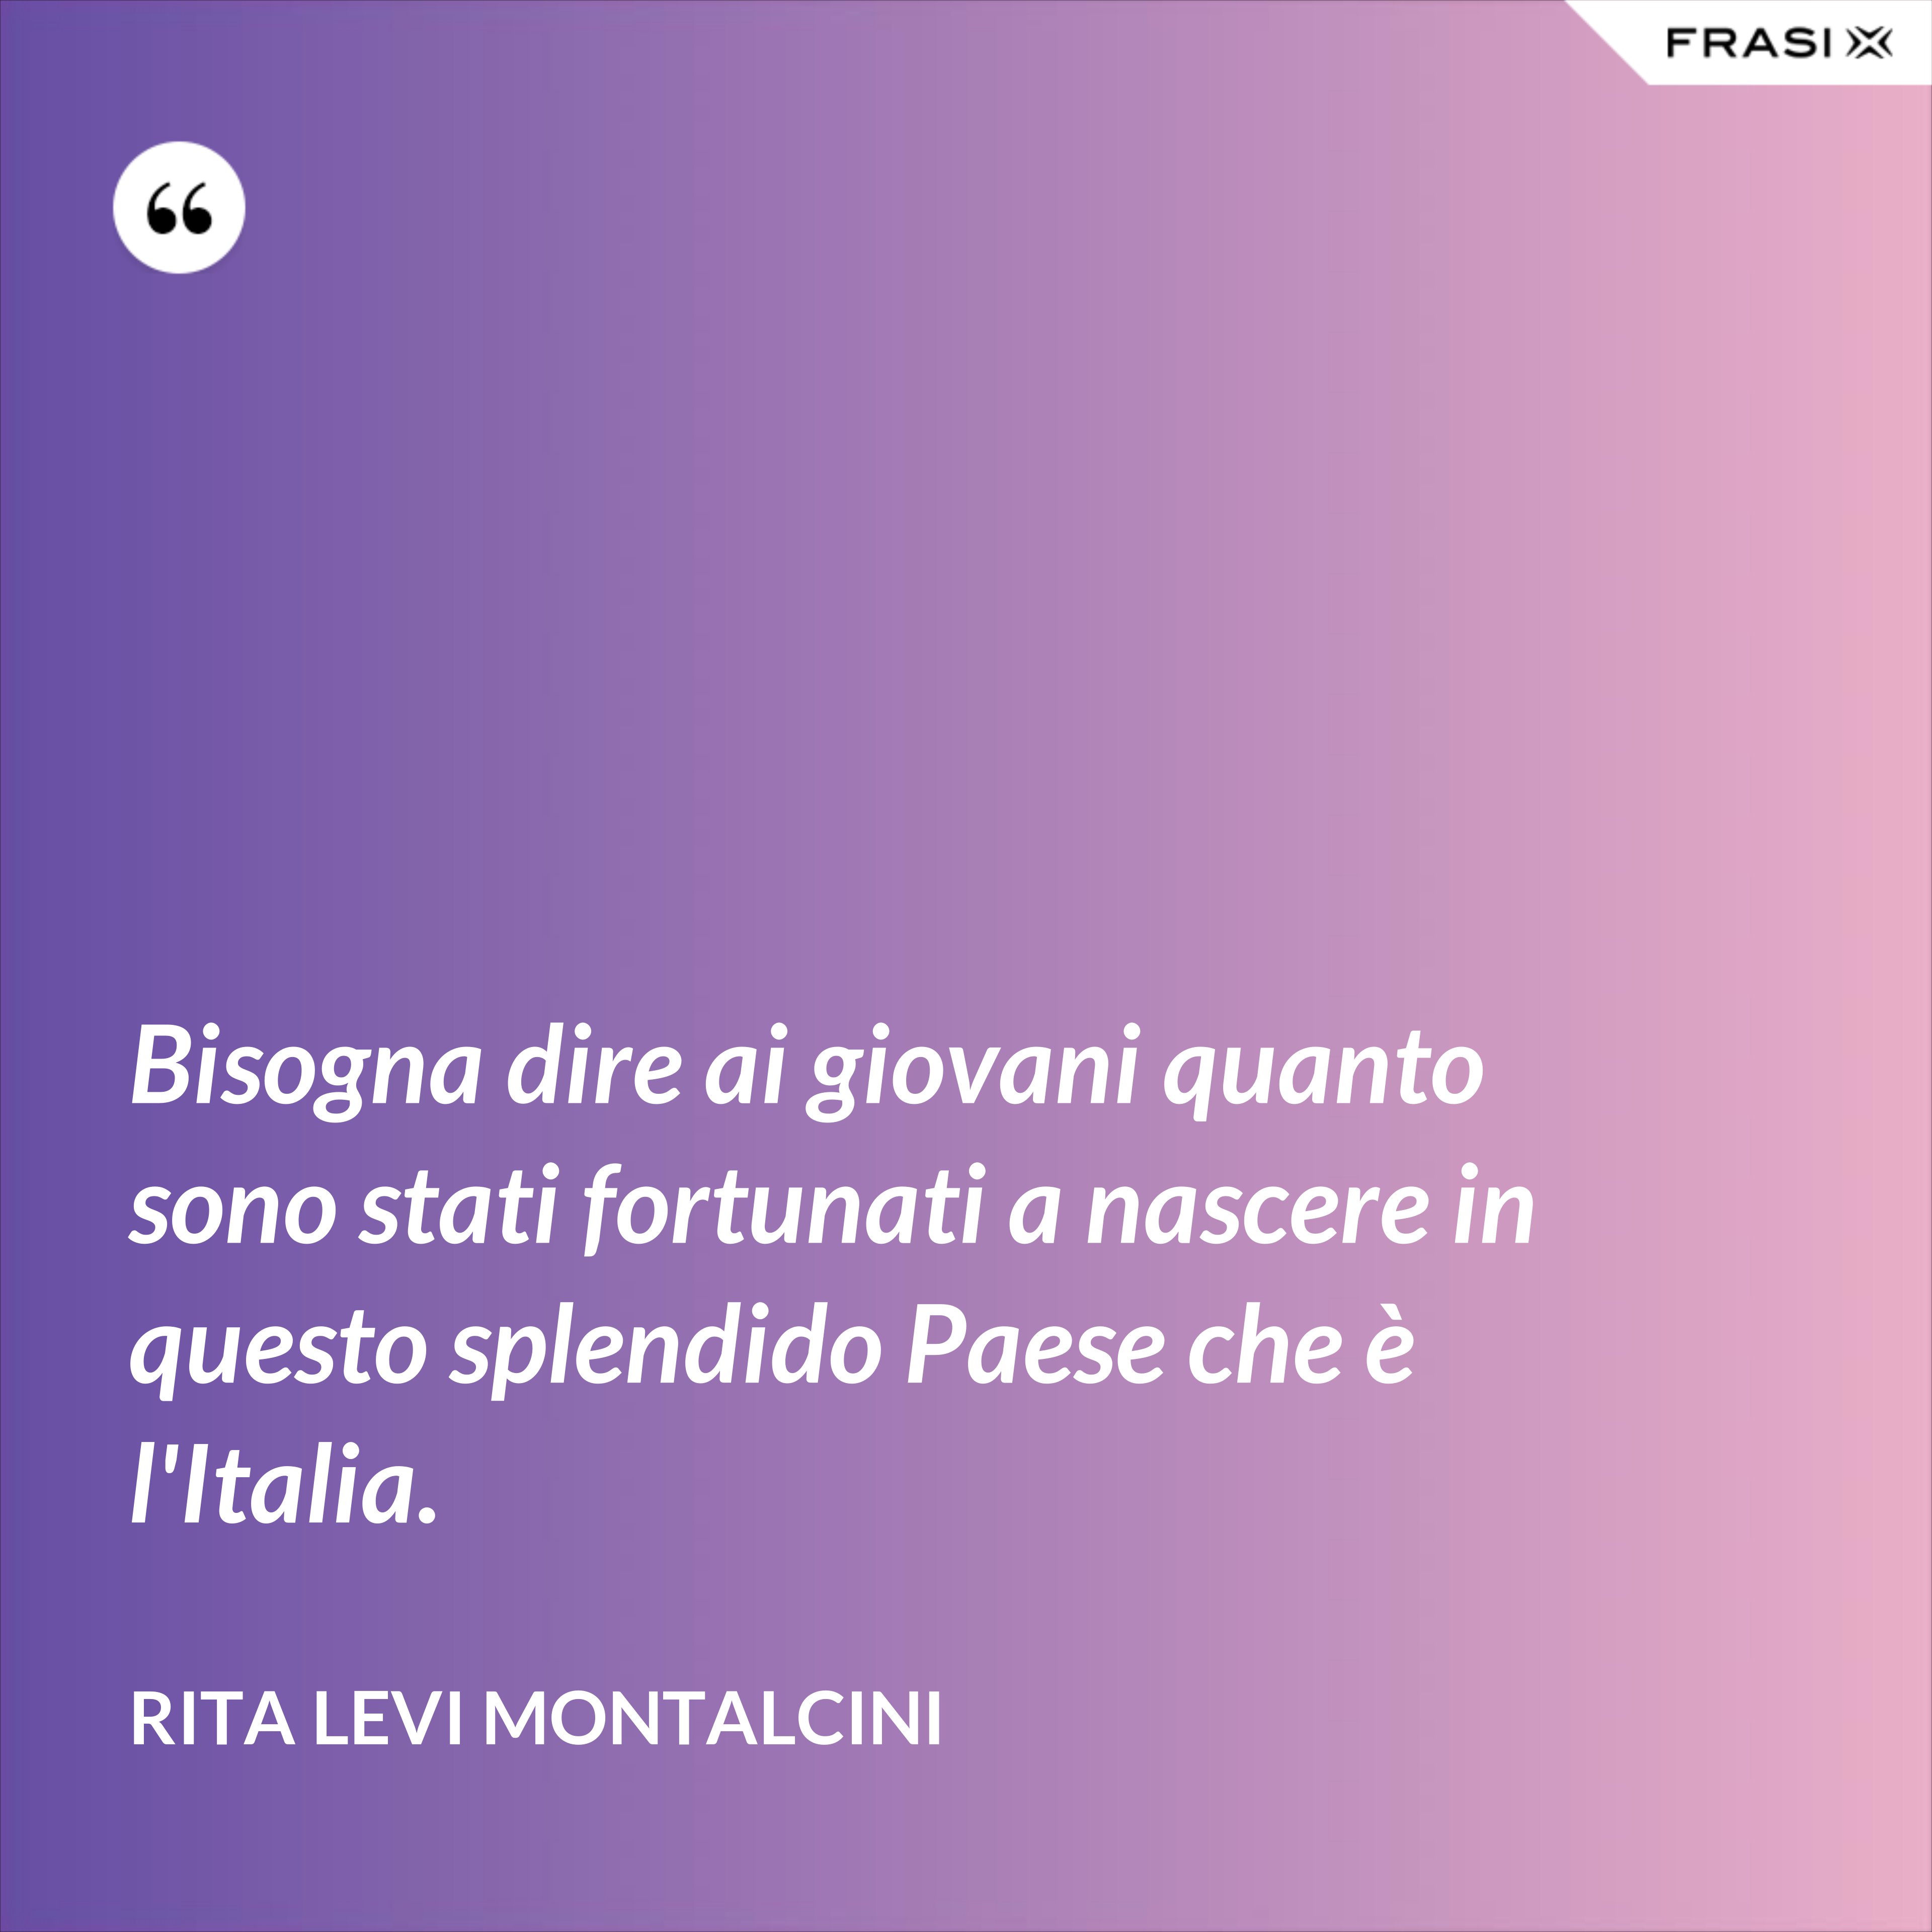 Bisogna dire ai giovani quanto sono stati fortunati a nascere in questo splendido Paese che è l'Italia. - Rita Levi Montalcini